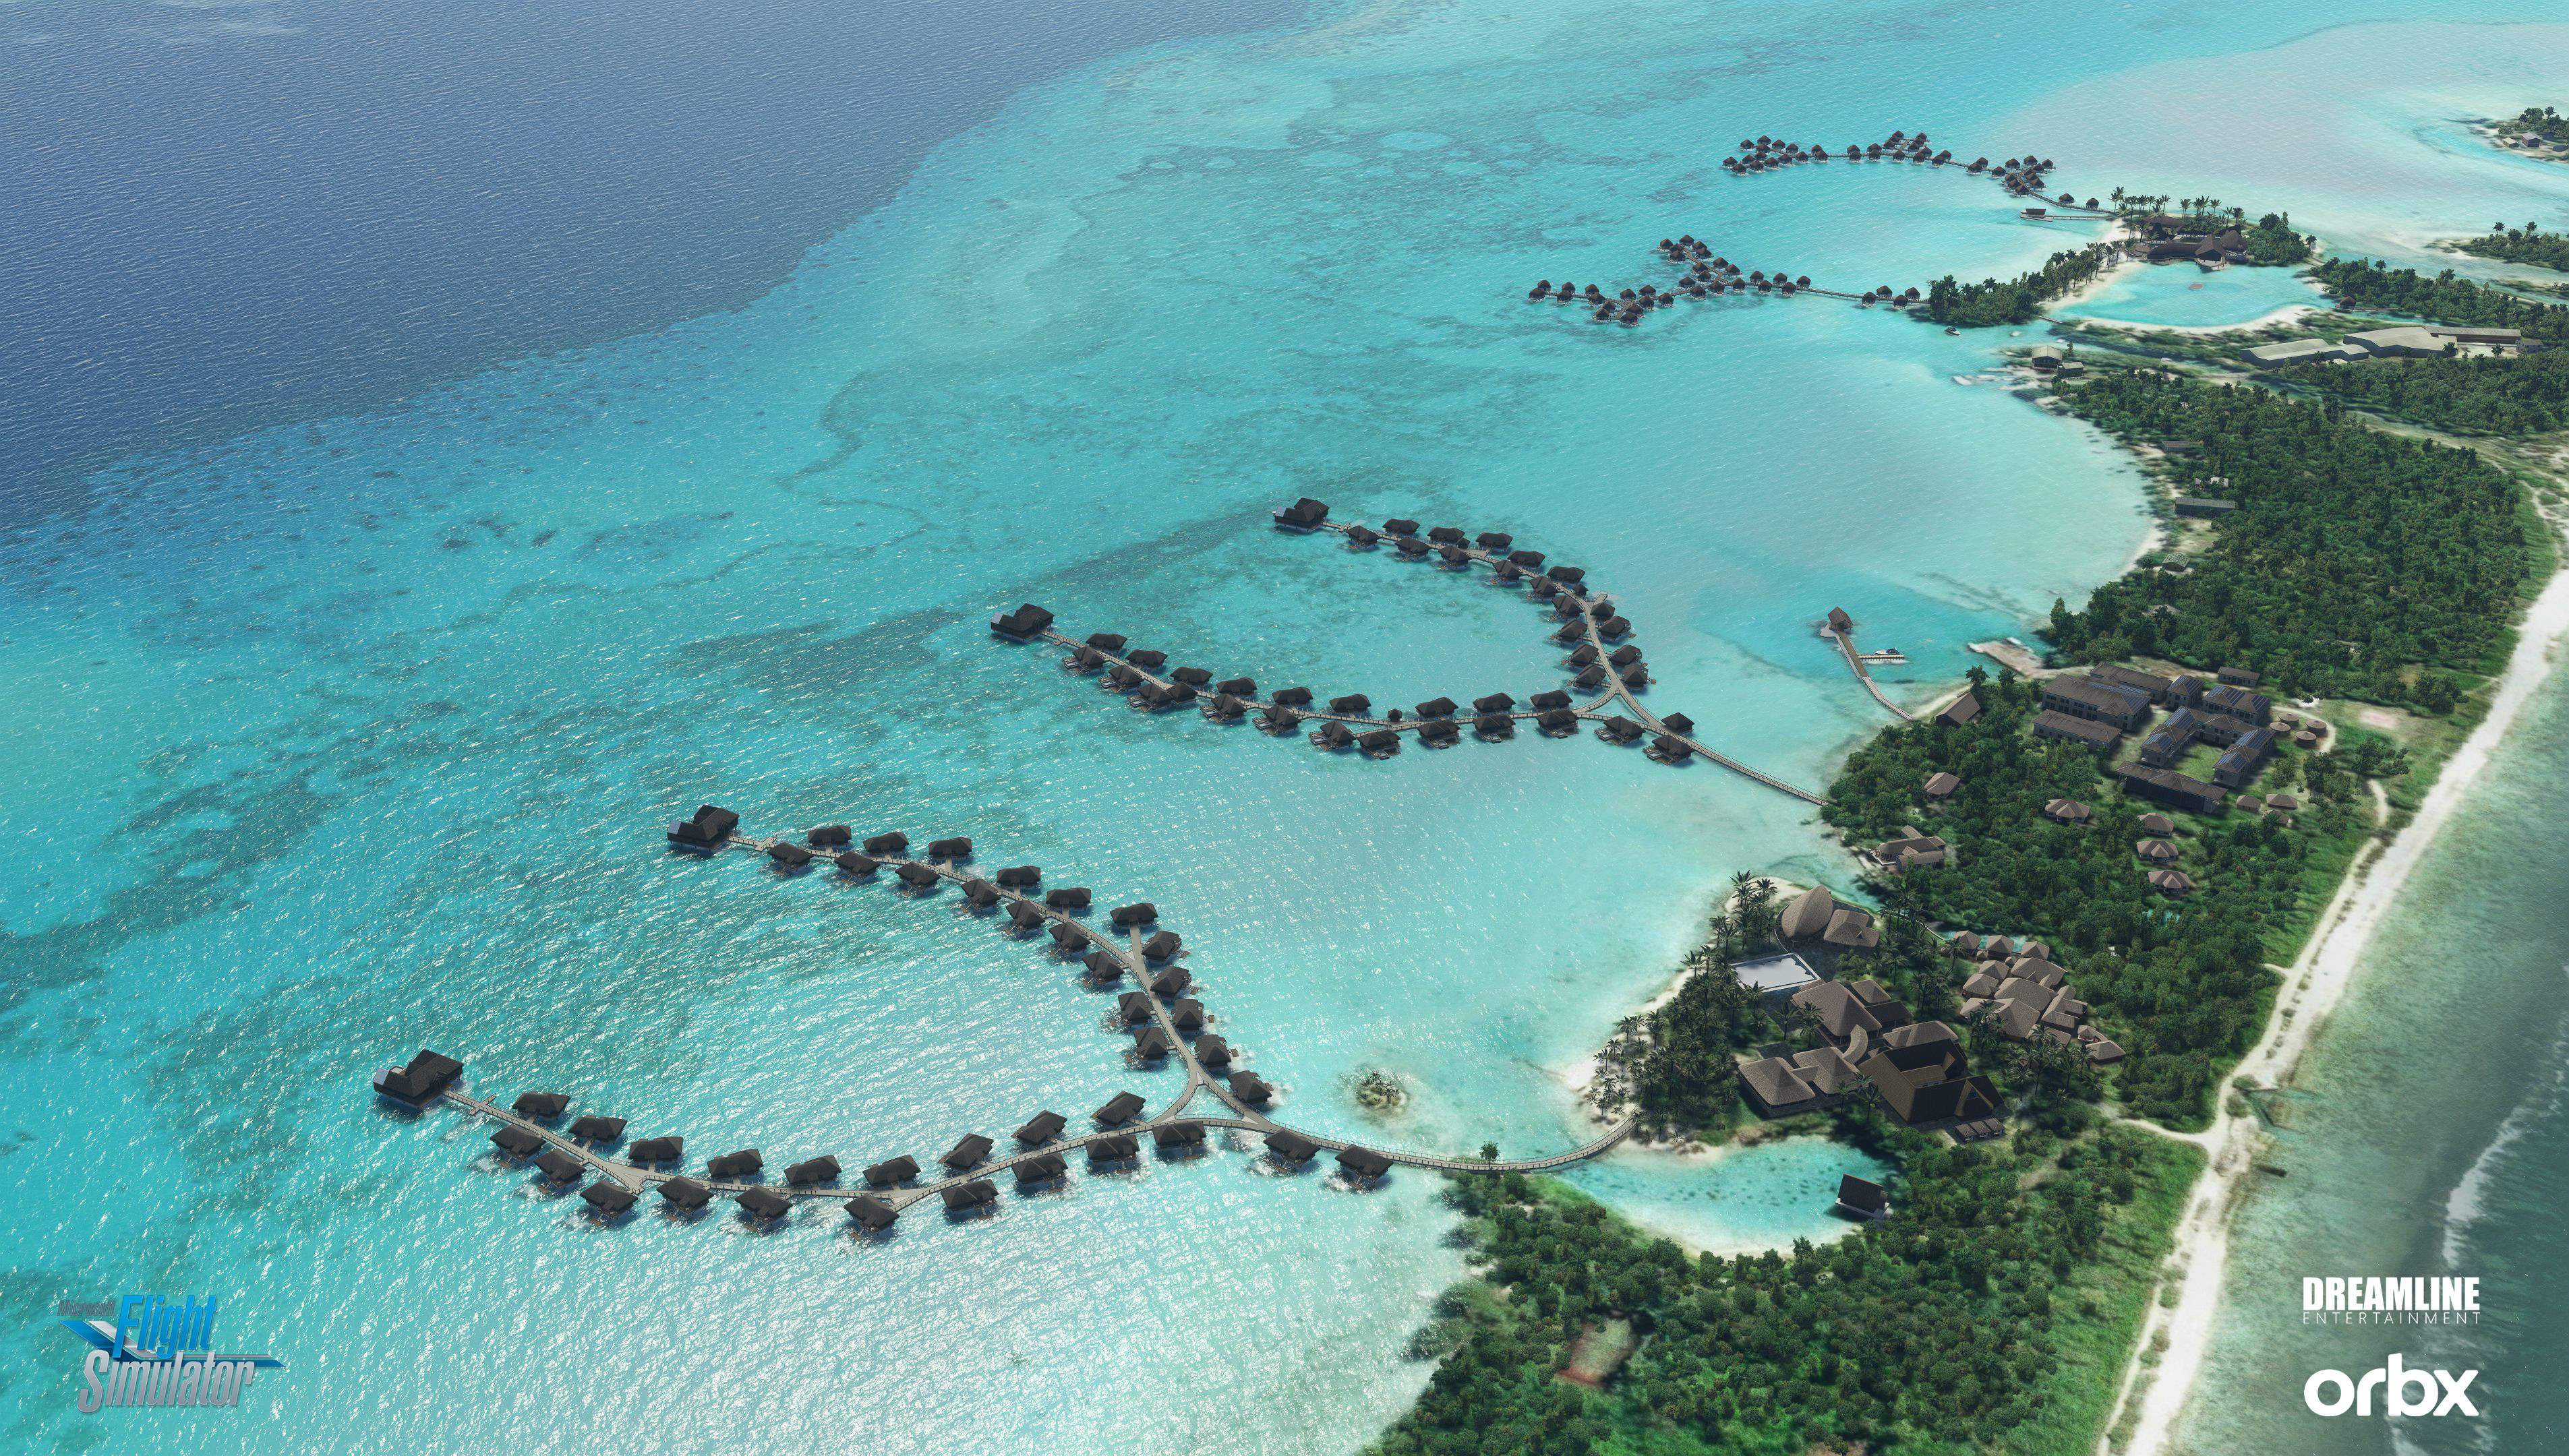 Bora Bora Resorts, French Polynesia